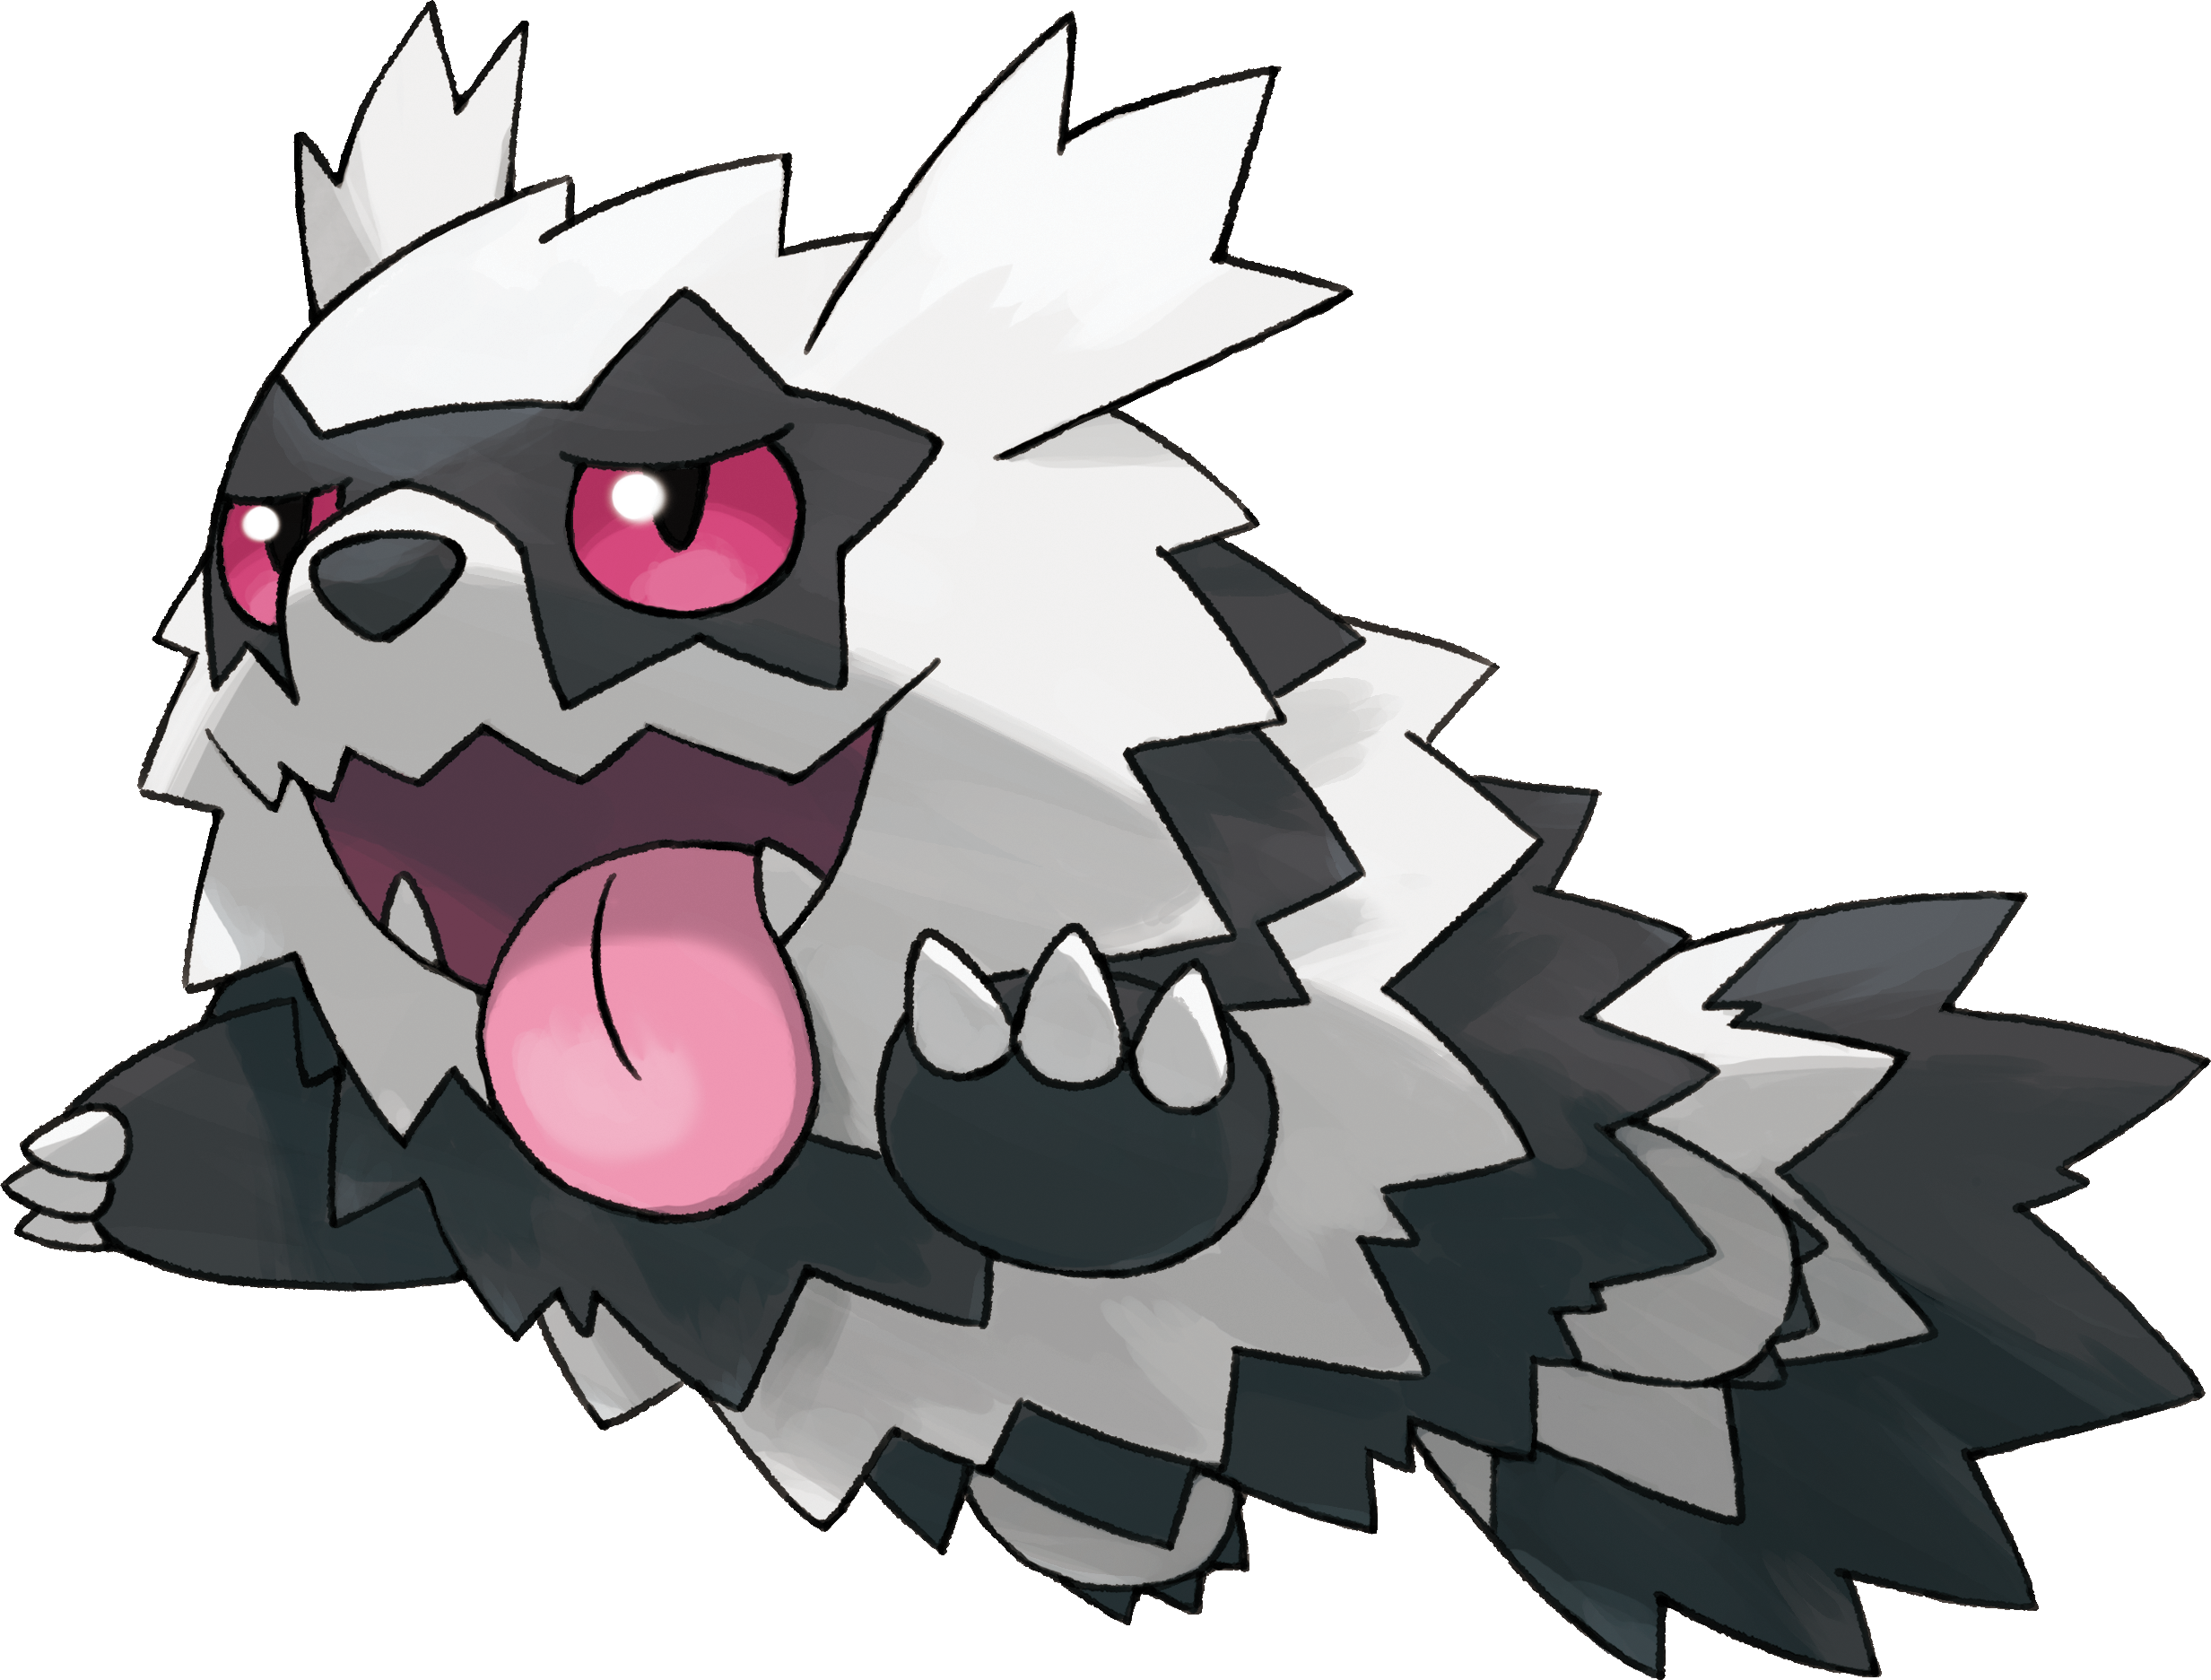 As Formas de Alola de Pokémon originários da região de Kanto estão